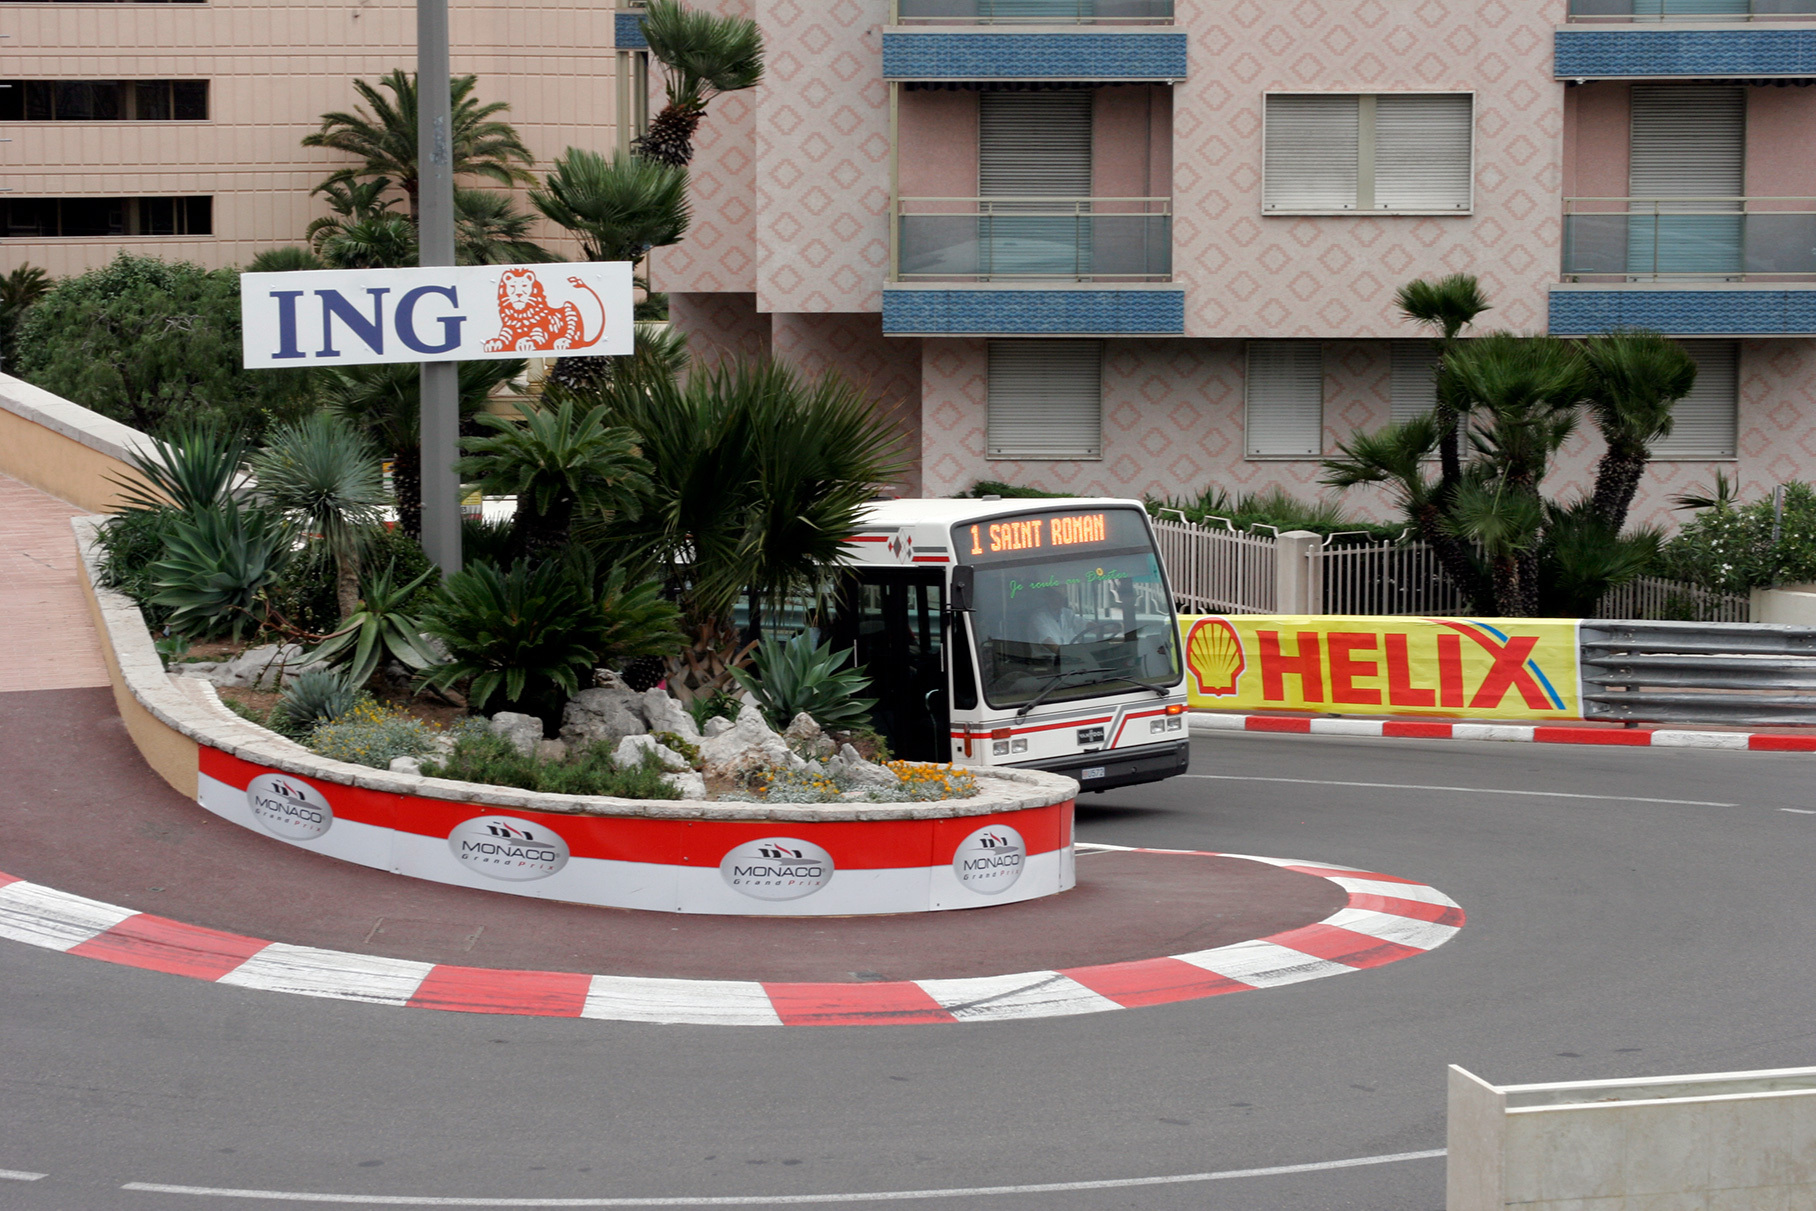 Так выглядит легендарная трасса в Монте-Карло в обычный день. Рекорд по числу выигранных Гран-при Монако принадлежит Айртону Сенне: шесть. На счету Грэма Хилла и Михаэля Шумахера по пять, у Алена Проста — четыре